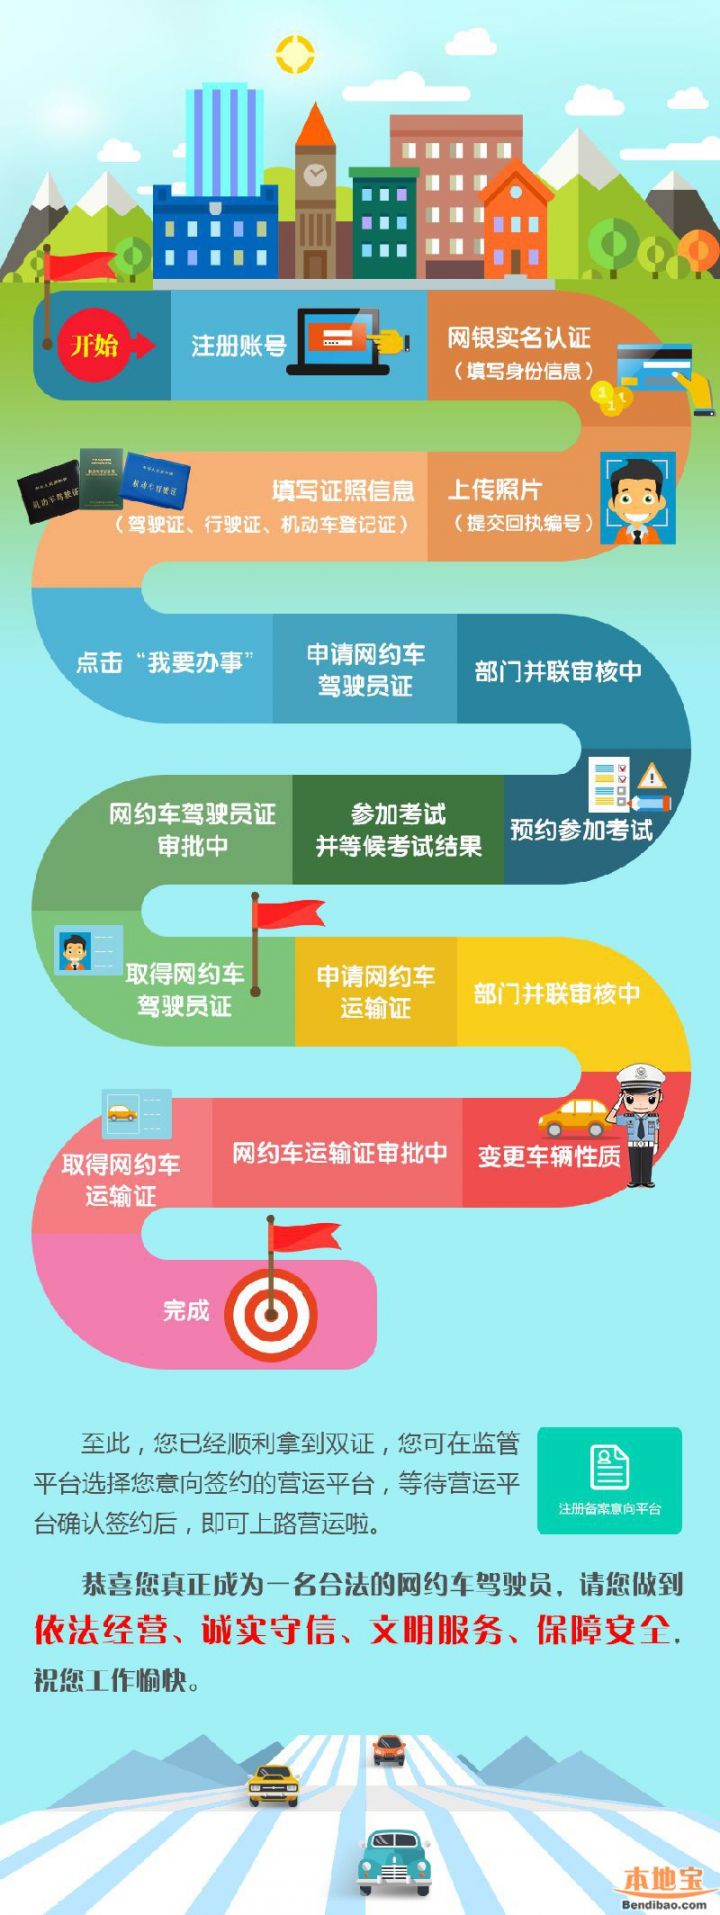 深圳网约车驾驶员证申请条件一览